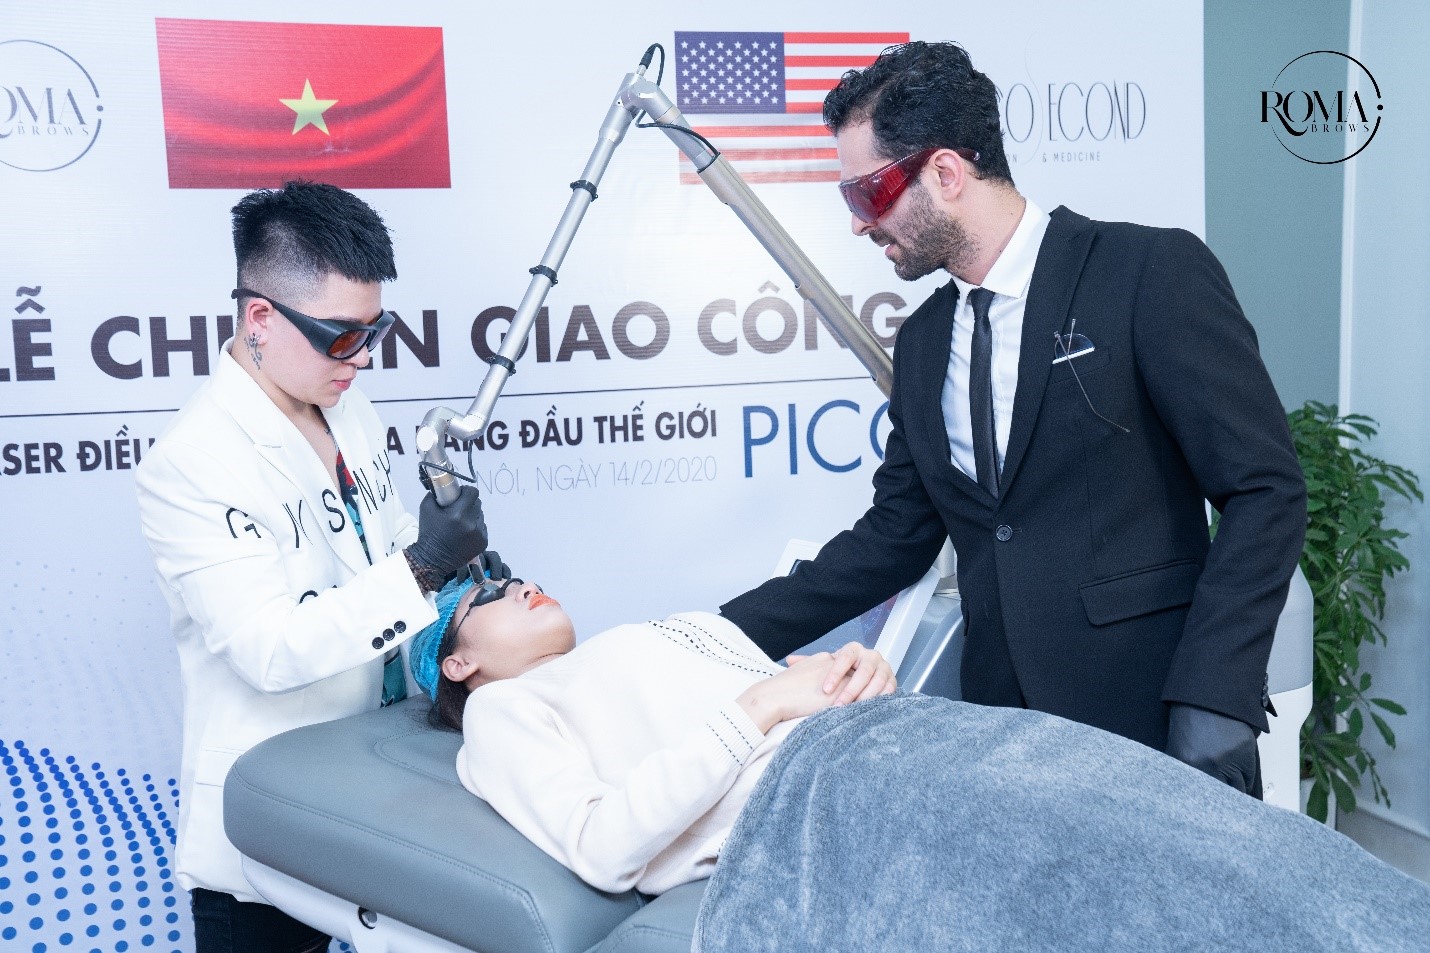 Roma Brows nhận chuyển giao công nghệ Laser Pico Max – công nghệ xóa xăm hàng đầu thế giới